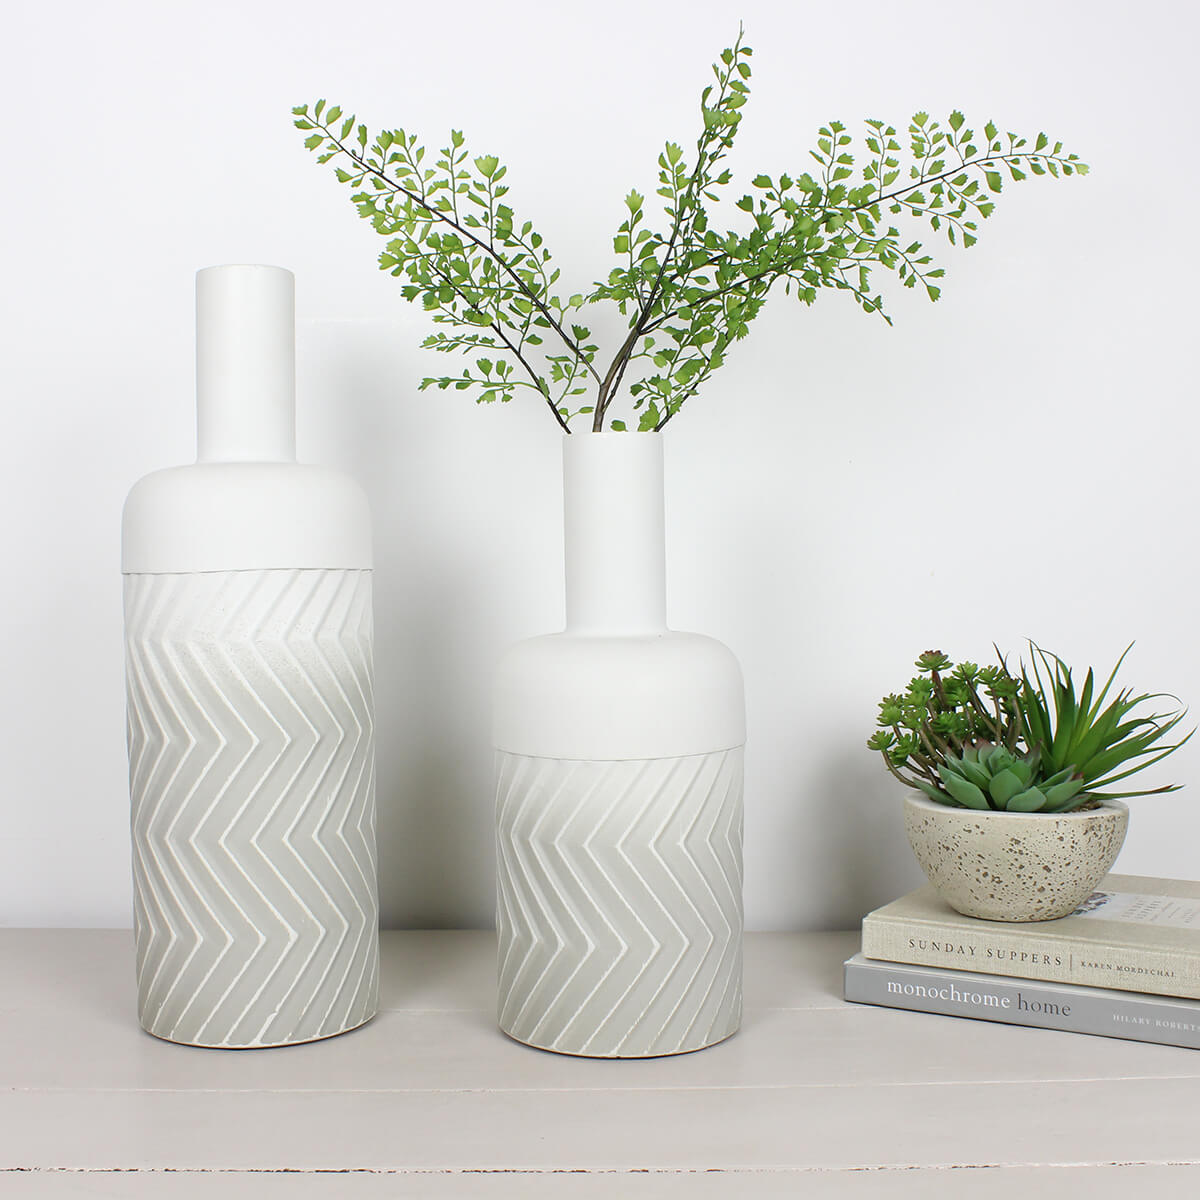 Bottle-Shaped Metal Maddox Vase - Large